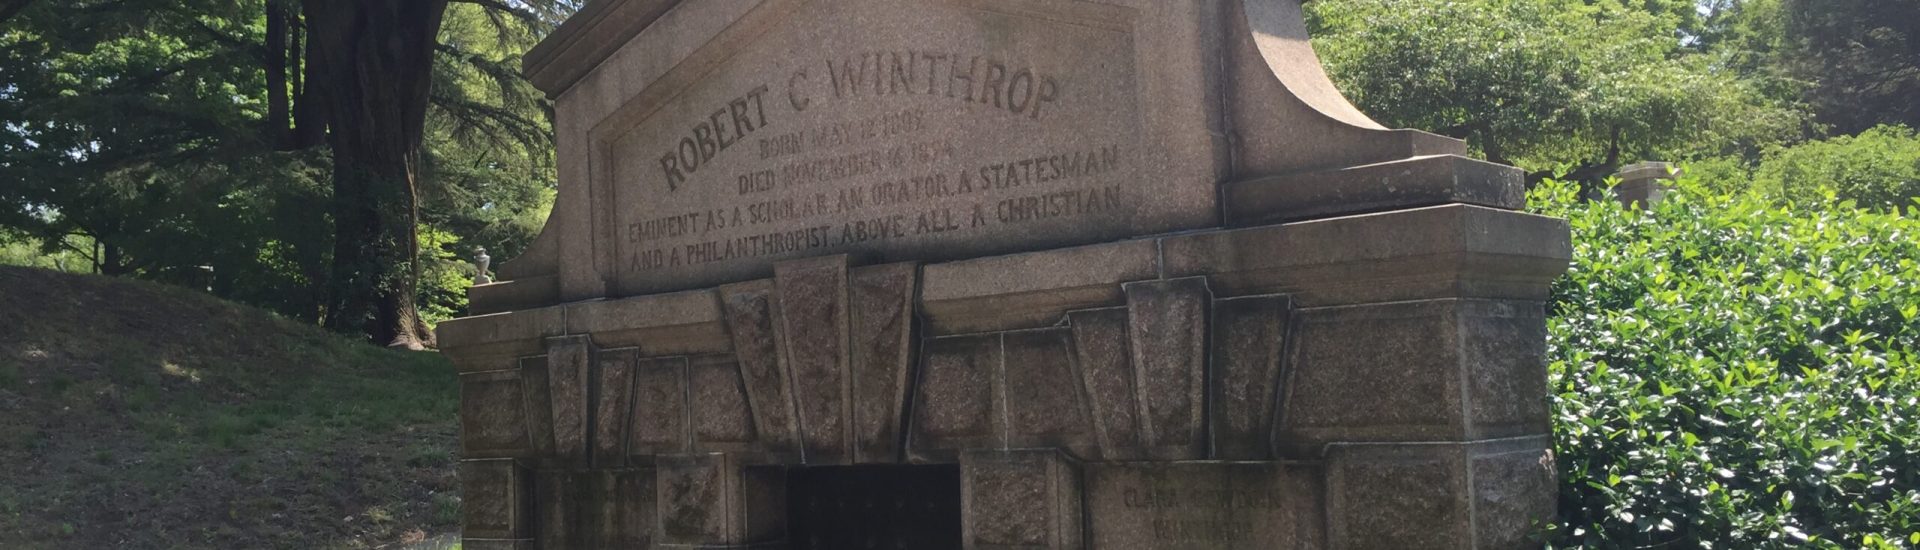 Robert C. Winthrop